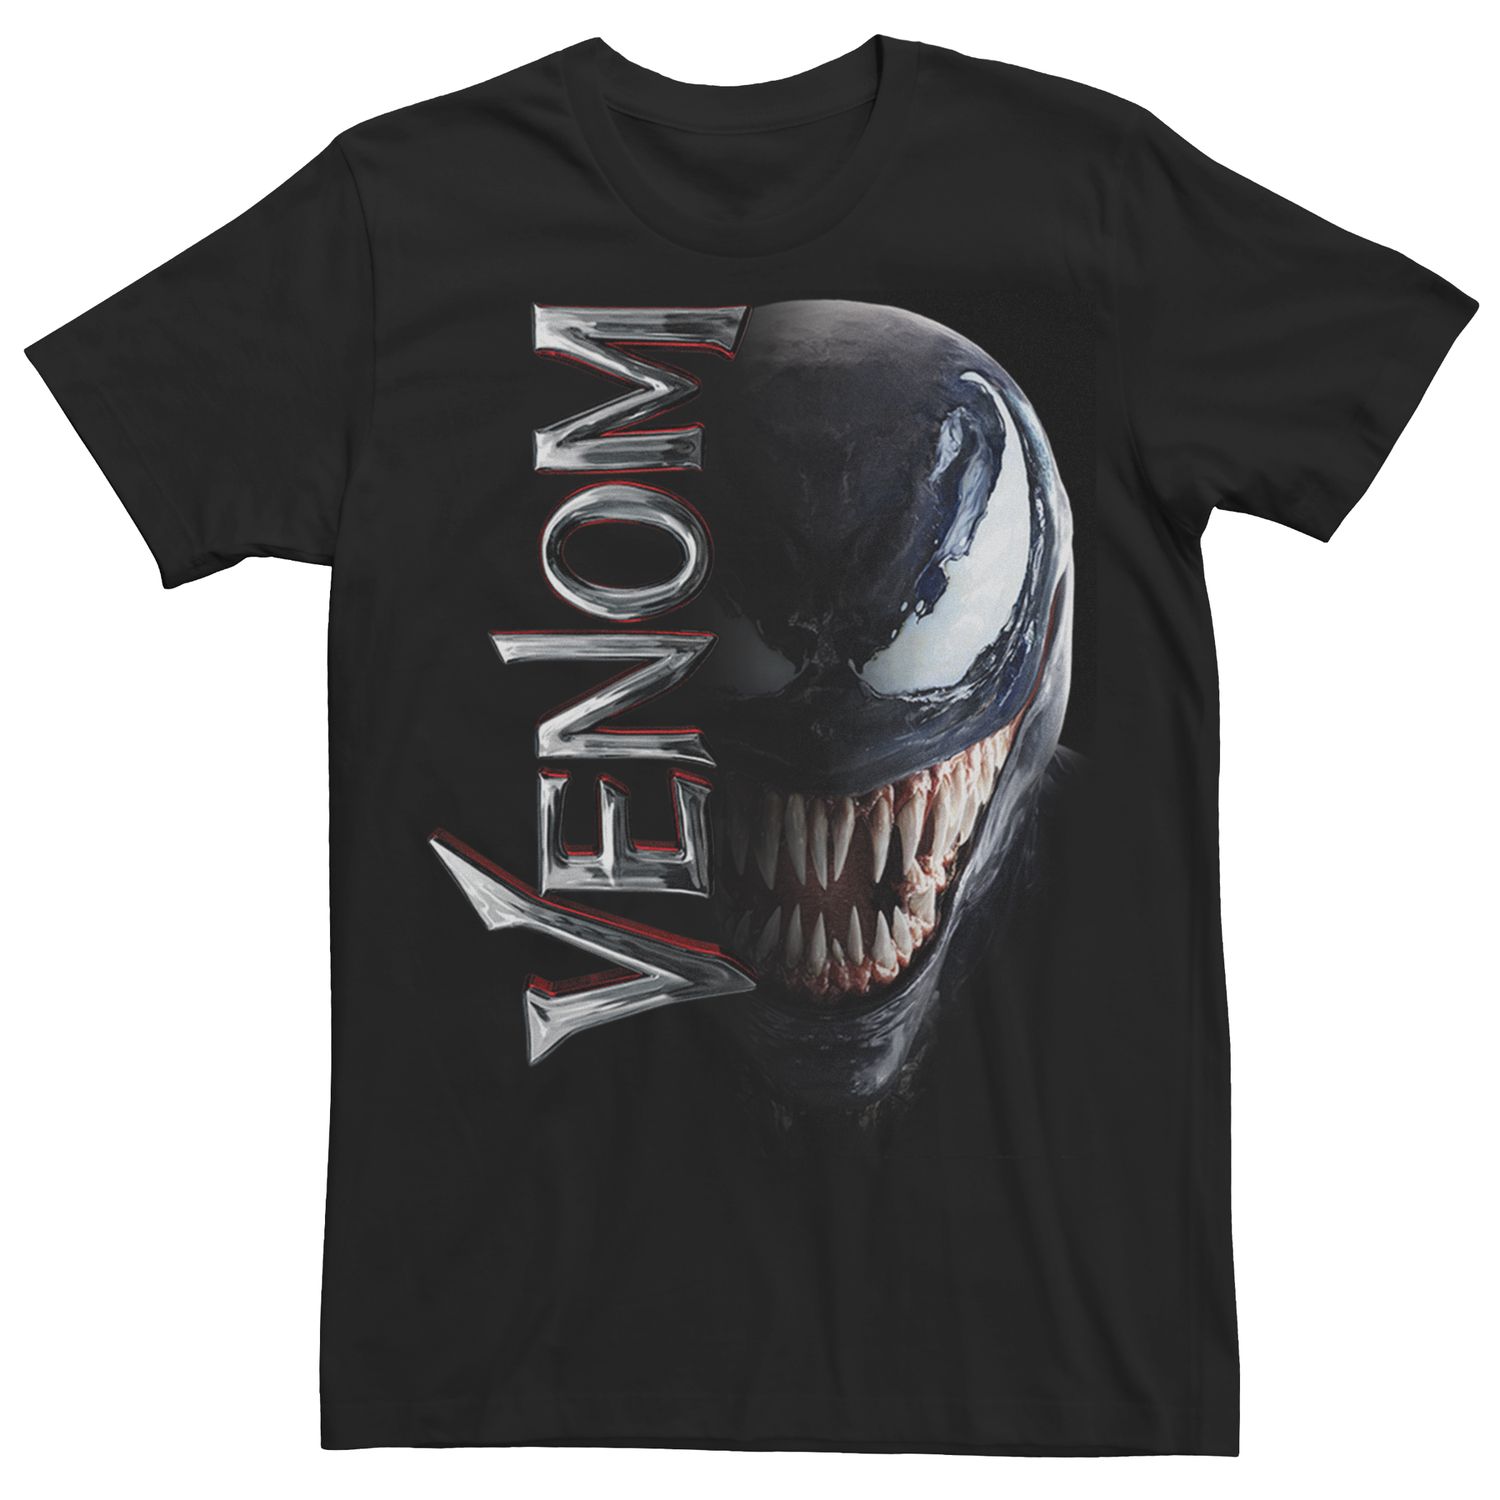 Мужская футболка с графическим рисунком Marvel Venom Licensed Character